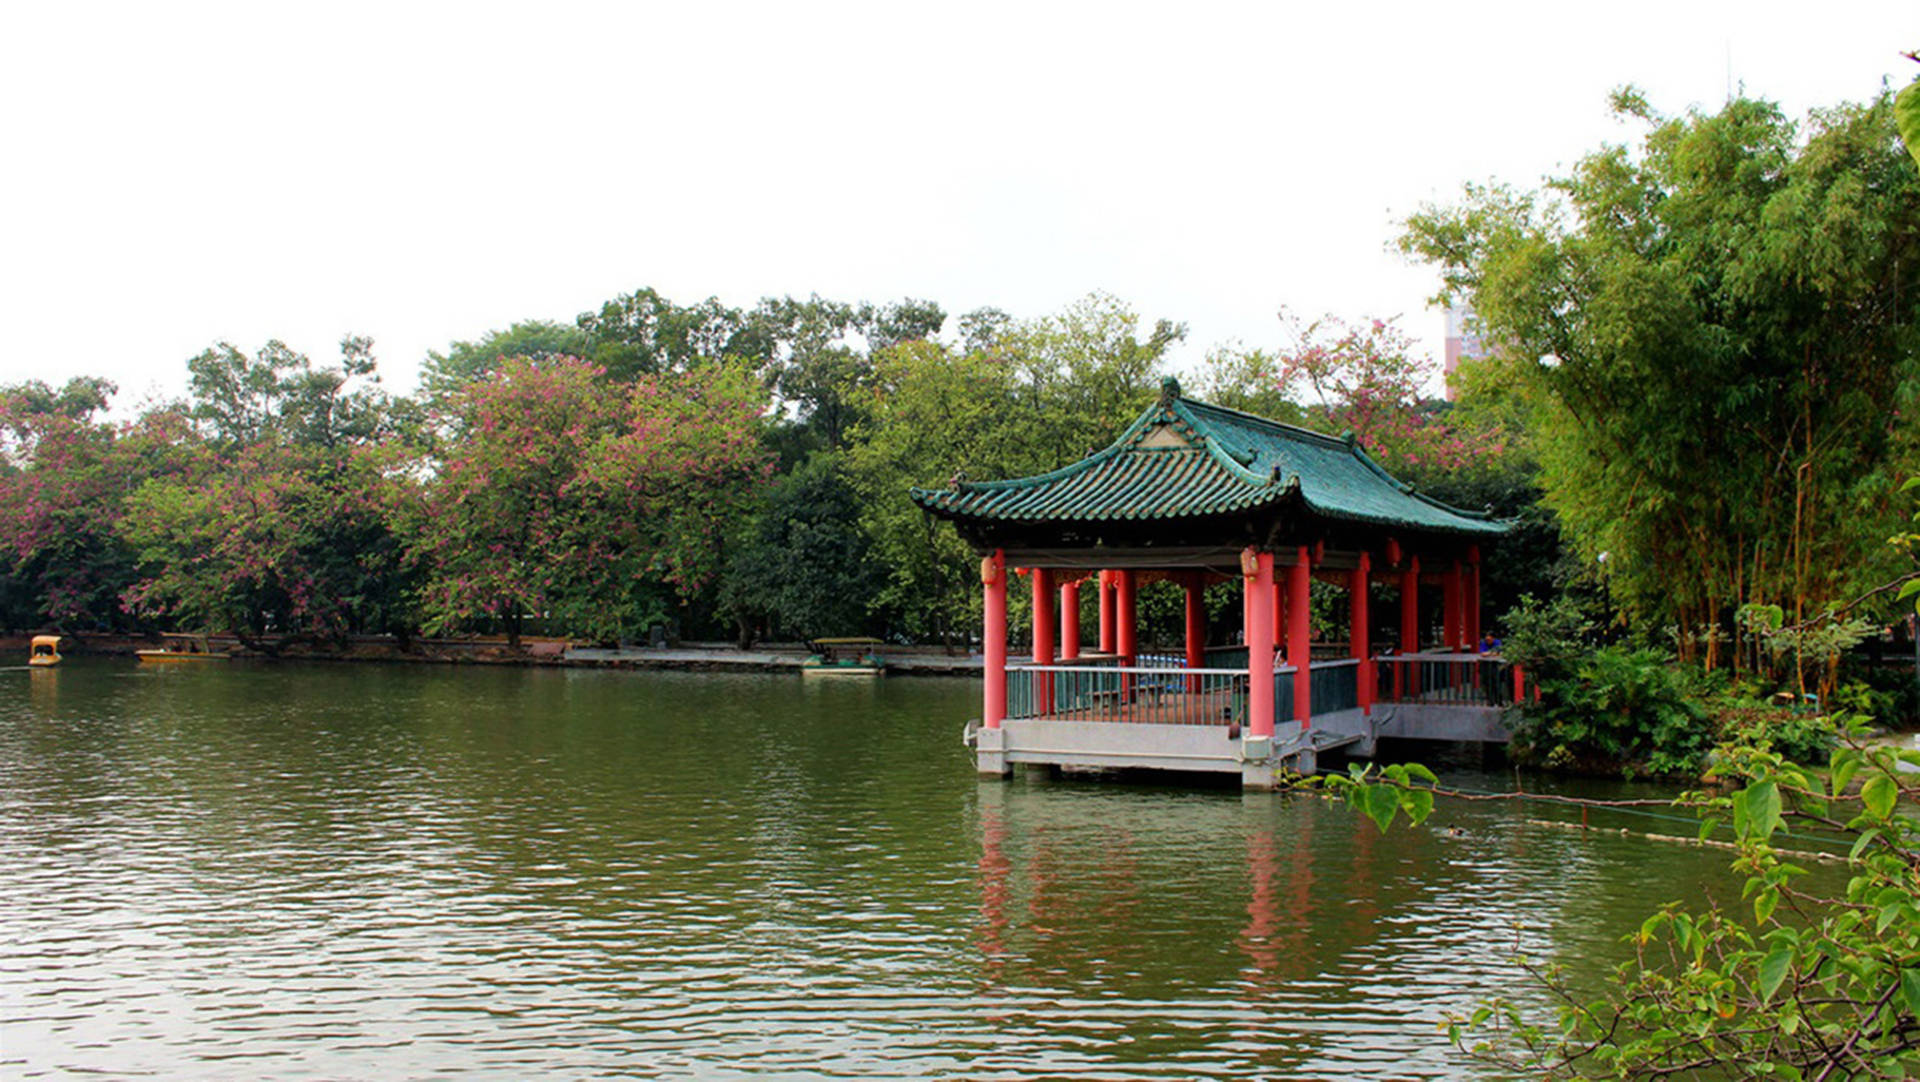 Guangzhou Yuexiu Park